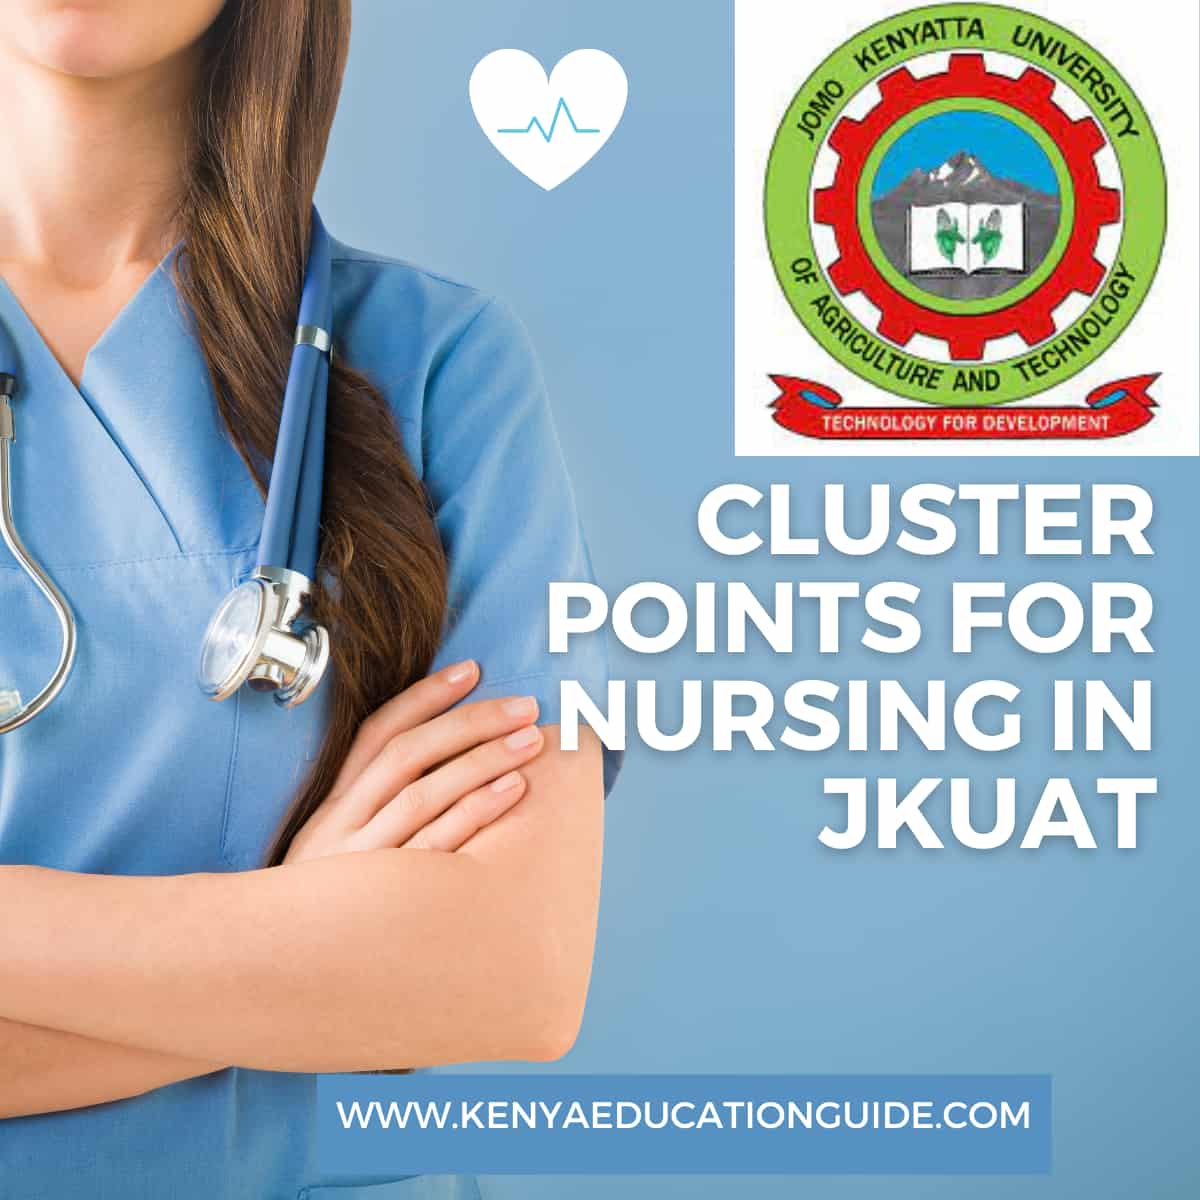 Cluster Points for Nursing in JKUAT